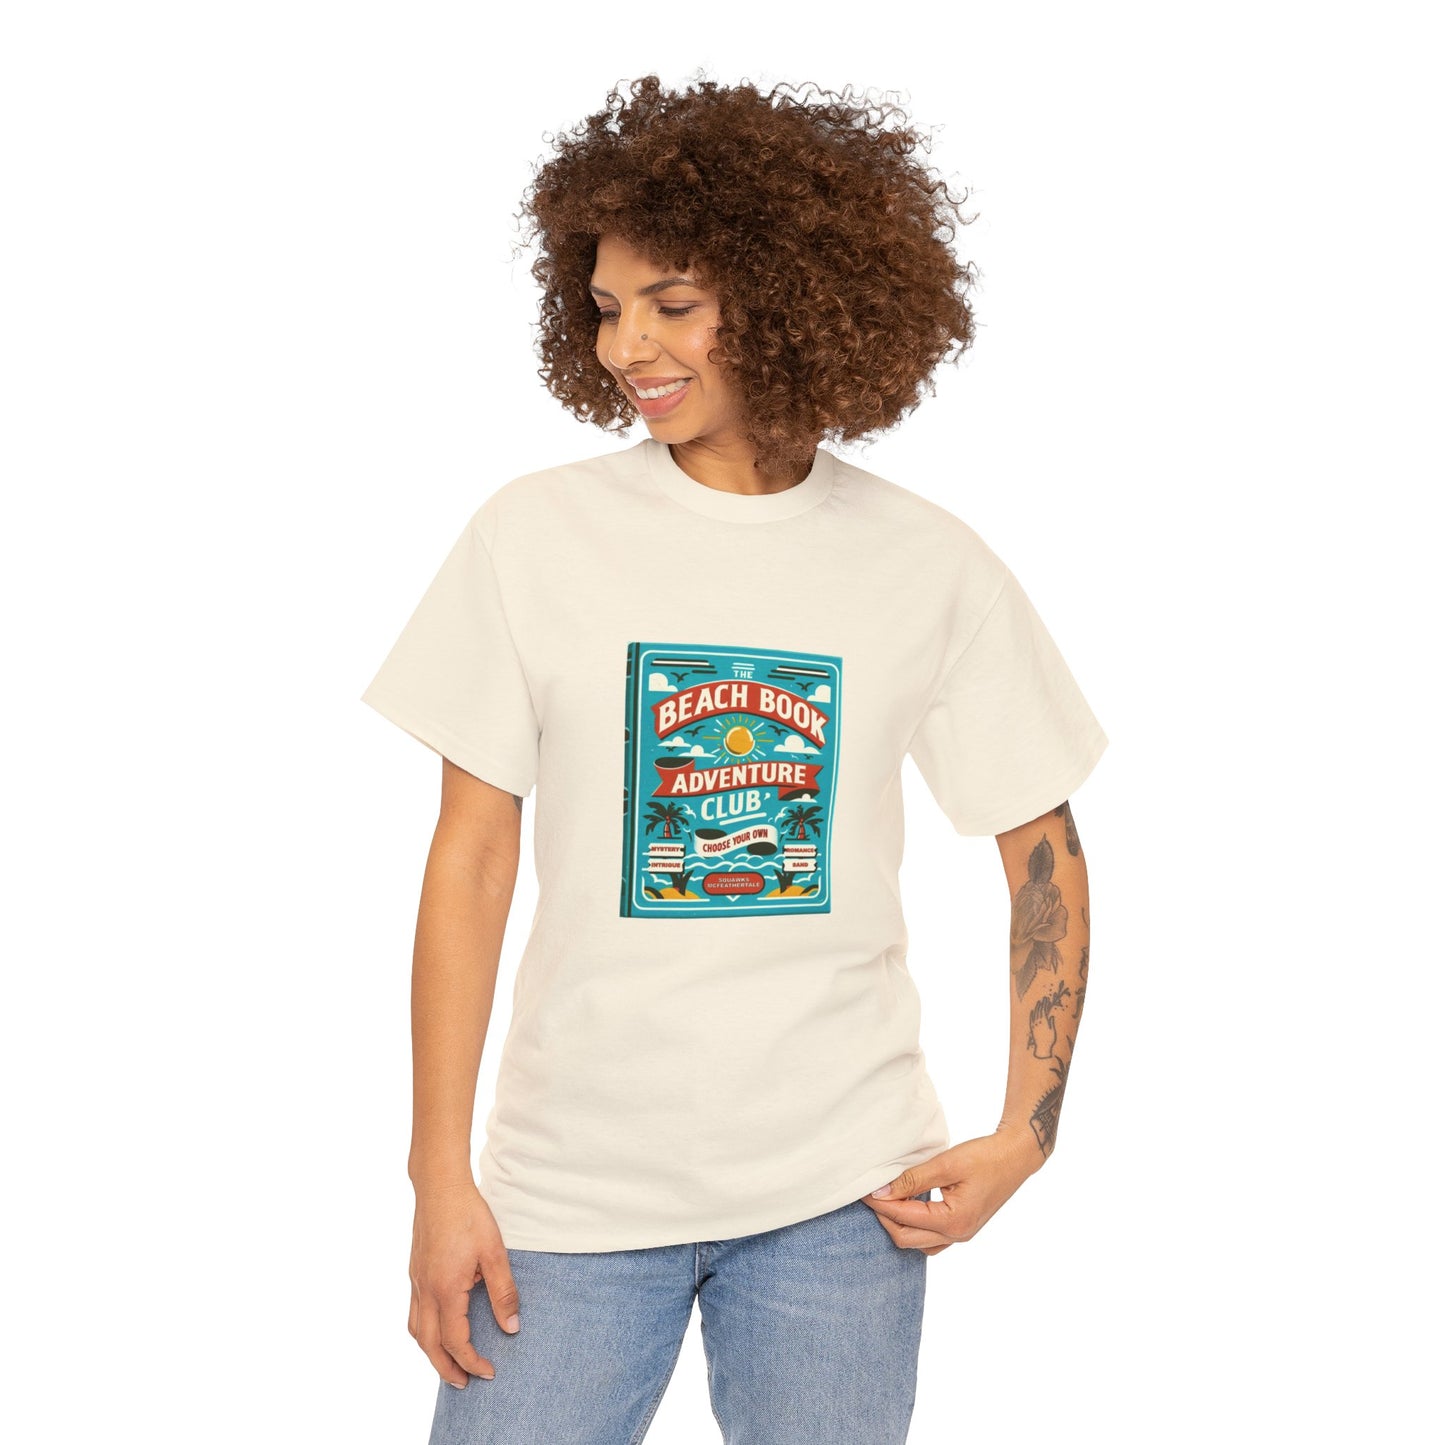 Beach Book Adventure Club T-Shirt